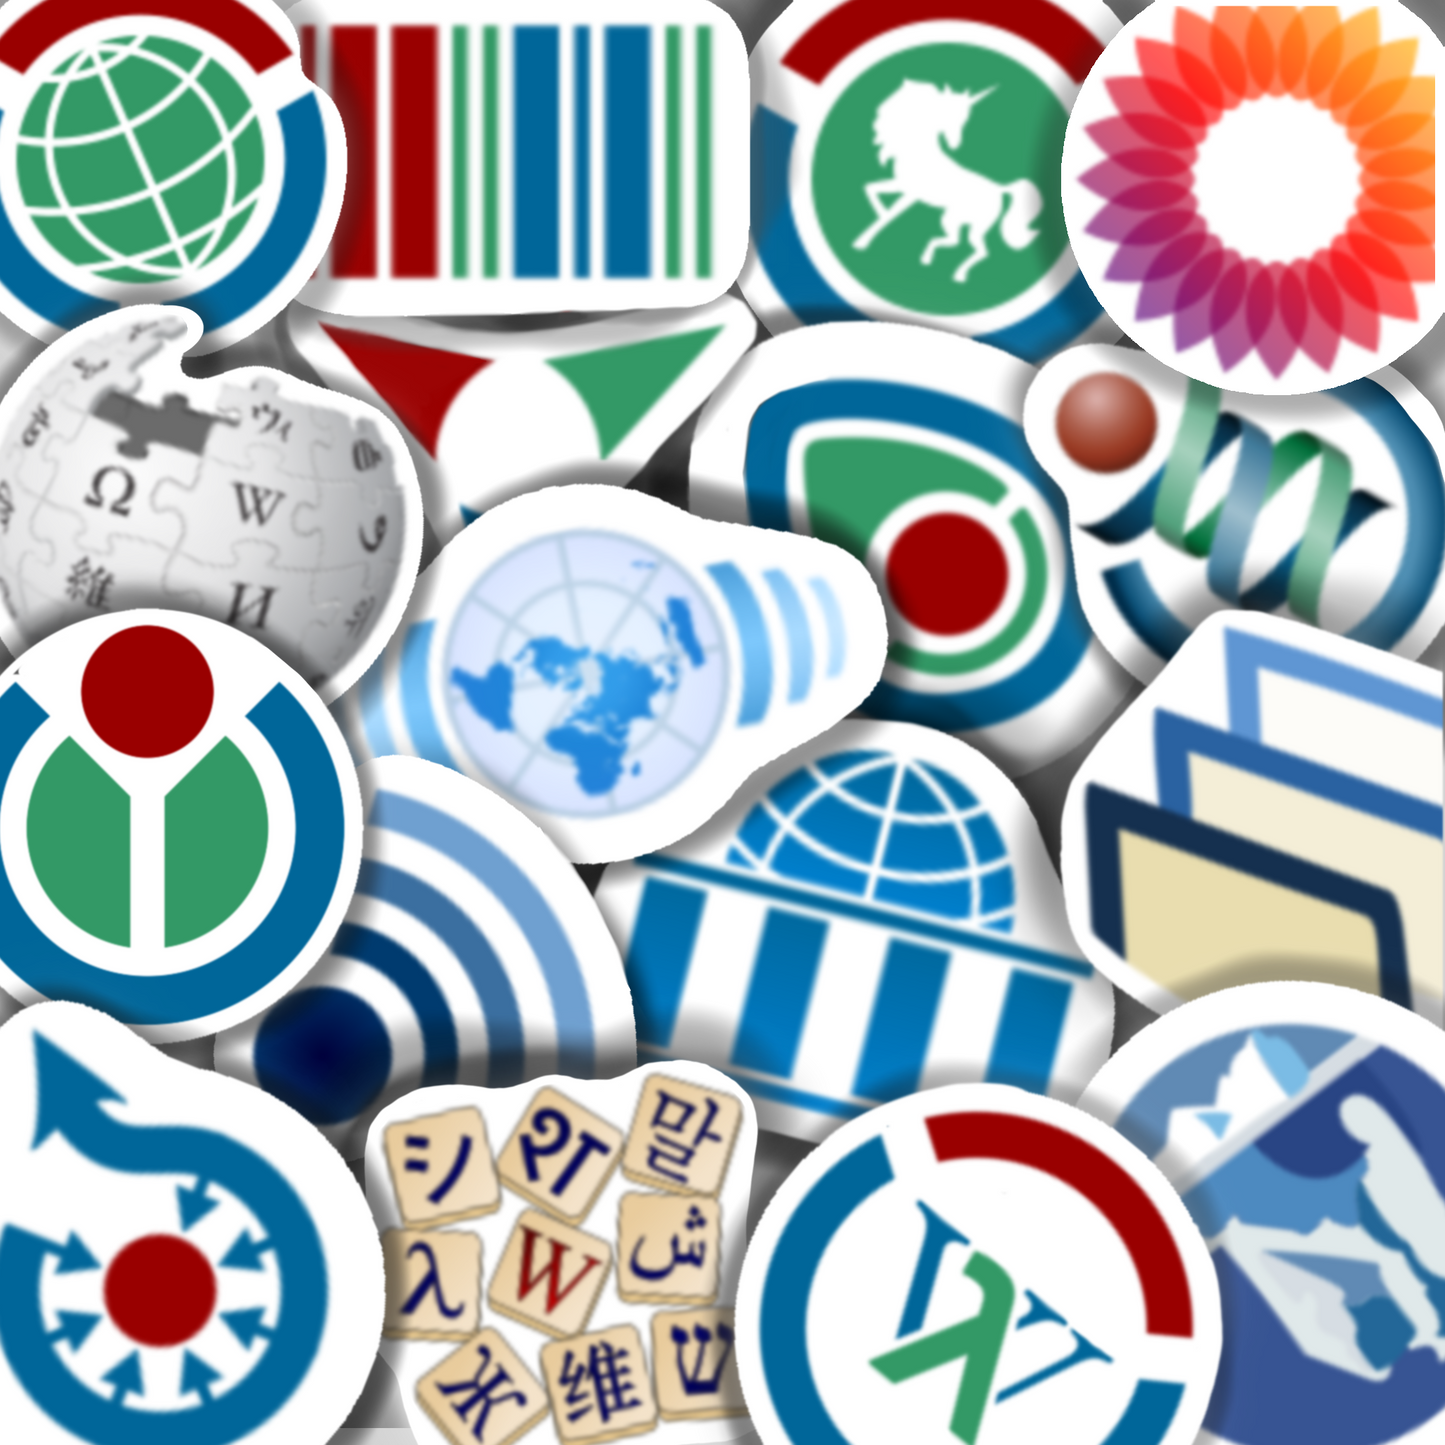 File:CC Cute Stickers.jpg - Wikipedia